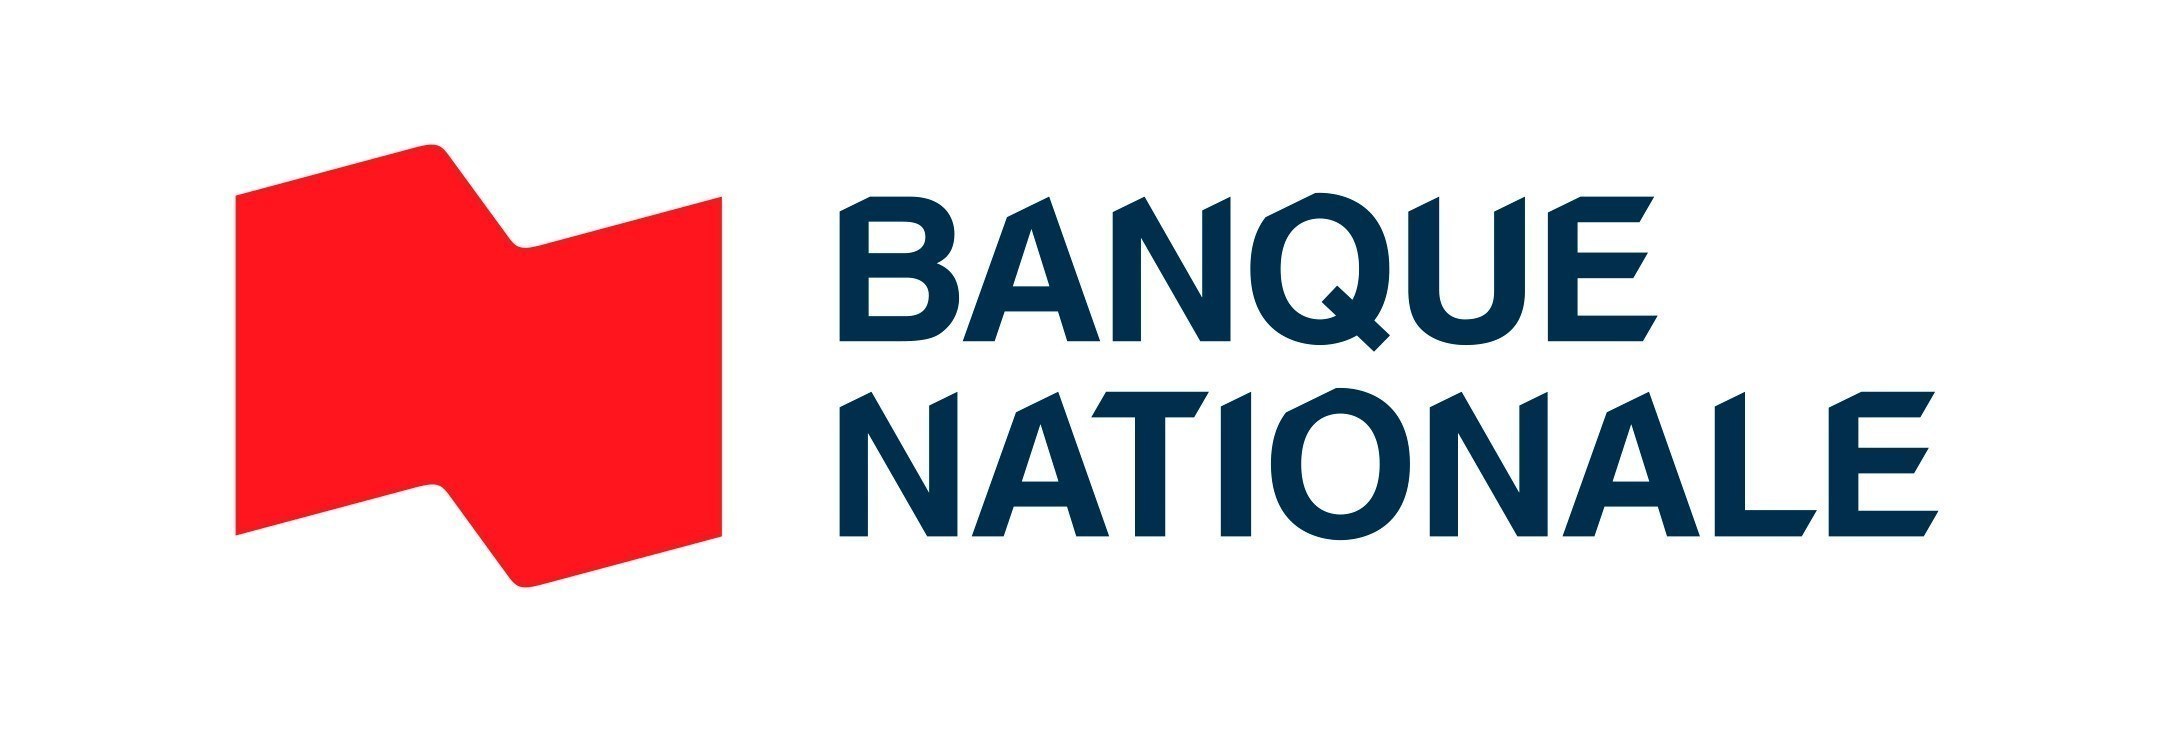 Banque Nationale du canada